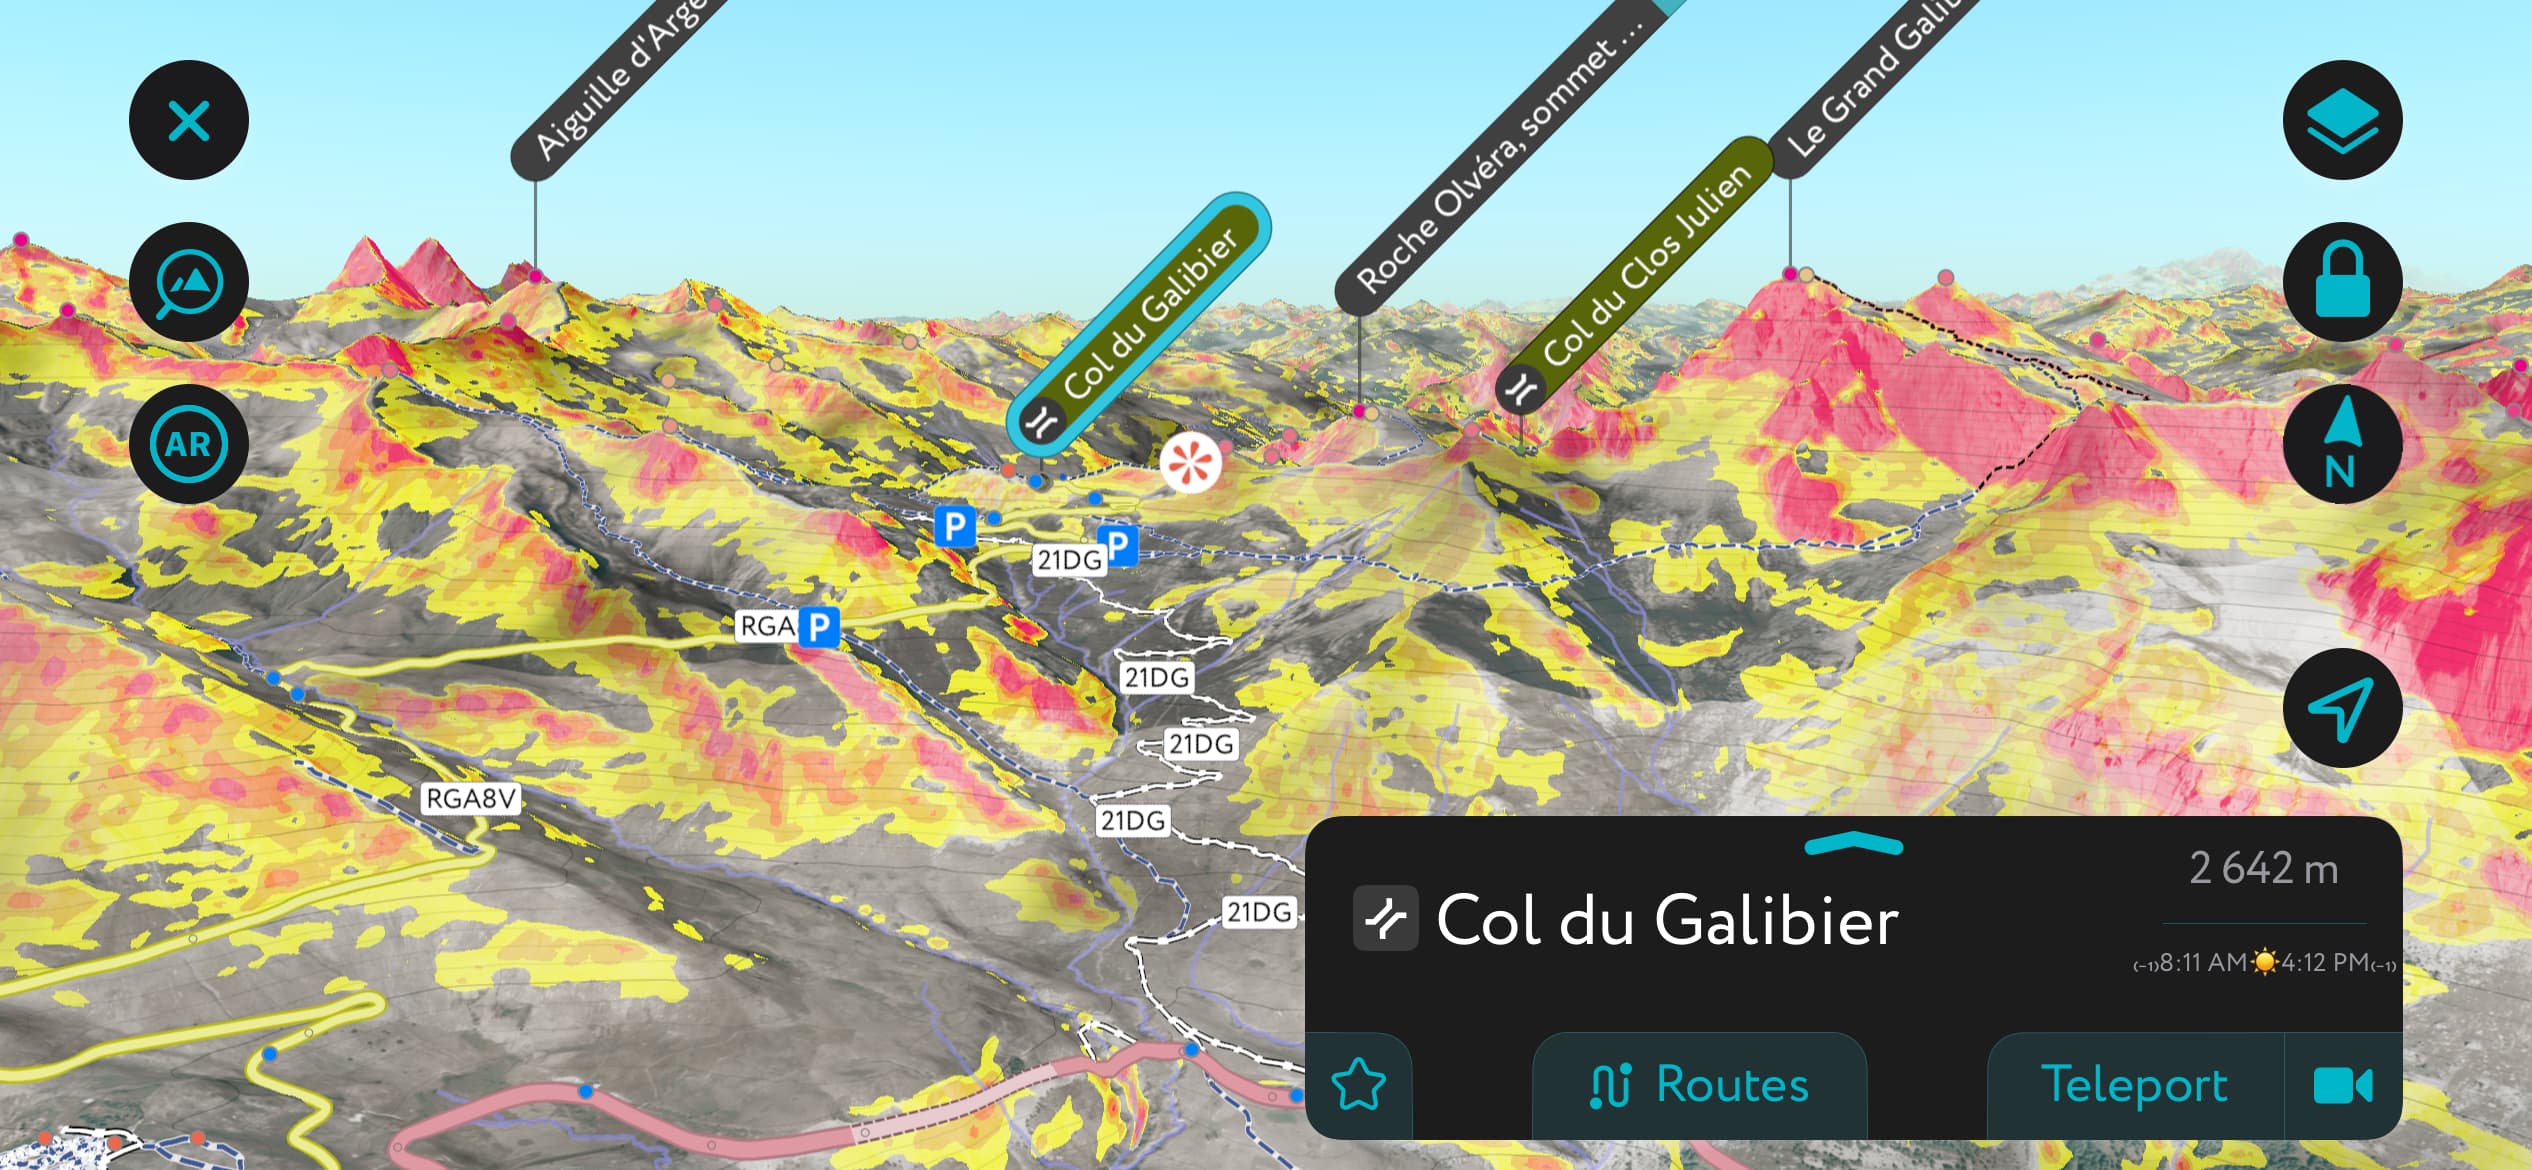 Sekrety znajdowania najlepszego śniegu poza trasami. Col du Galibier, po przeciwnej stronie przełęczy niż na powyższym zdjęciu. Po tej stronie znajduje się więcej stoków o niskim kącie nachylenia.